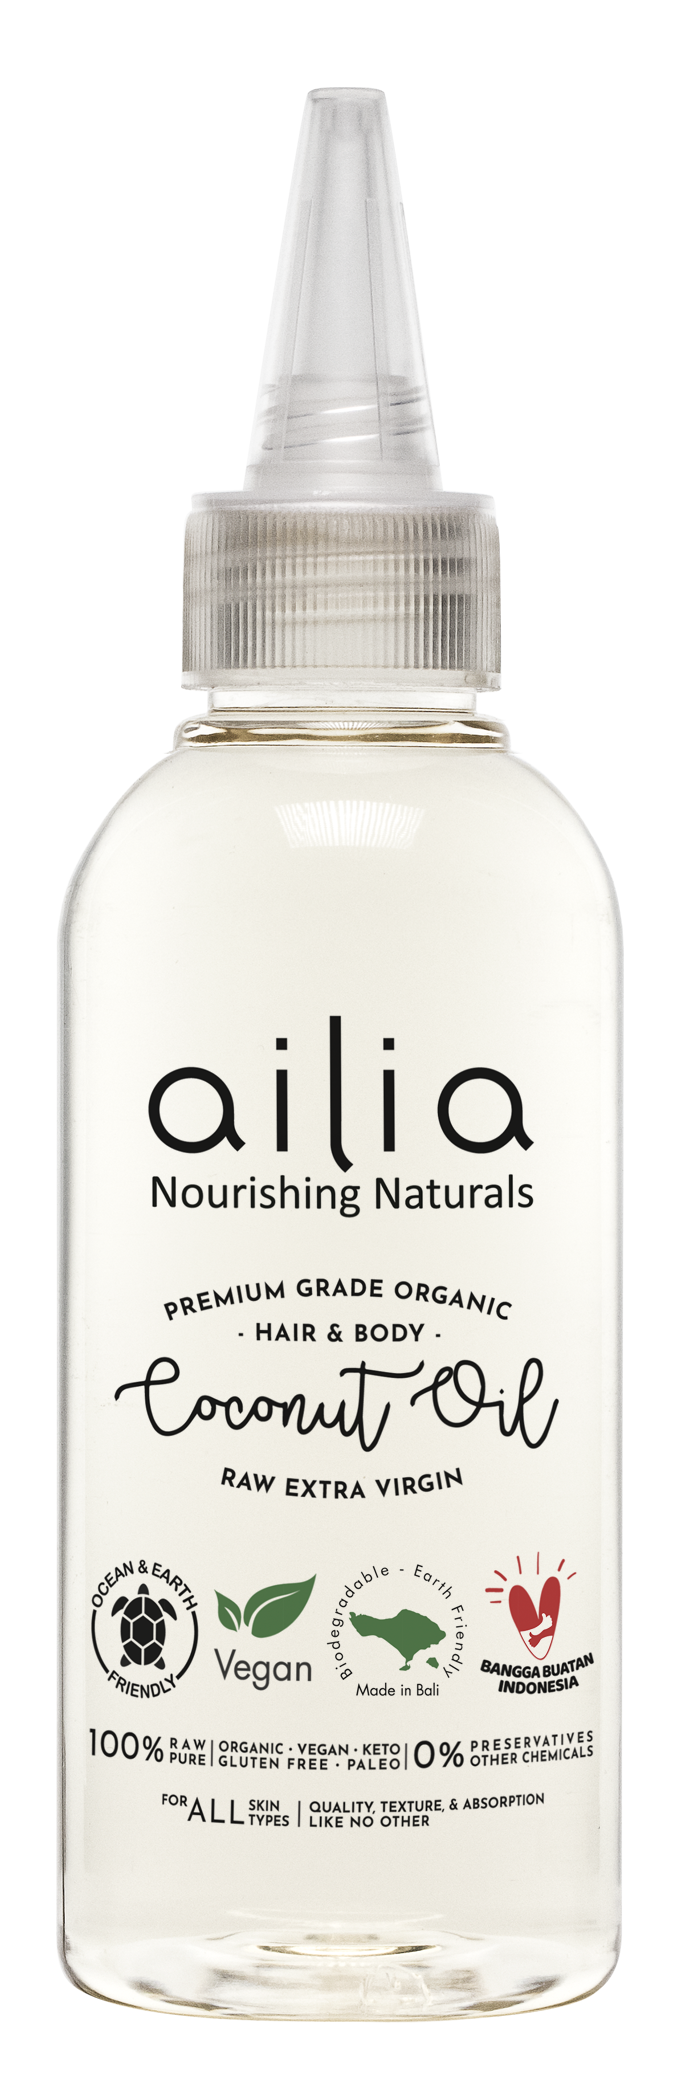 ailia Raw Hair & Body Extra Virgin Coconut Oil